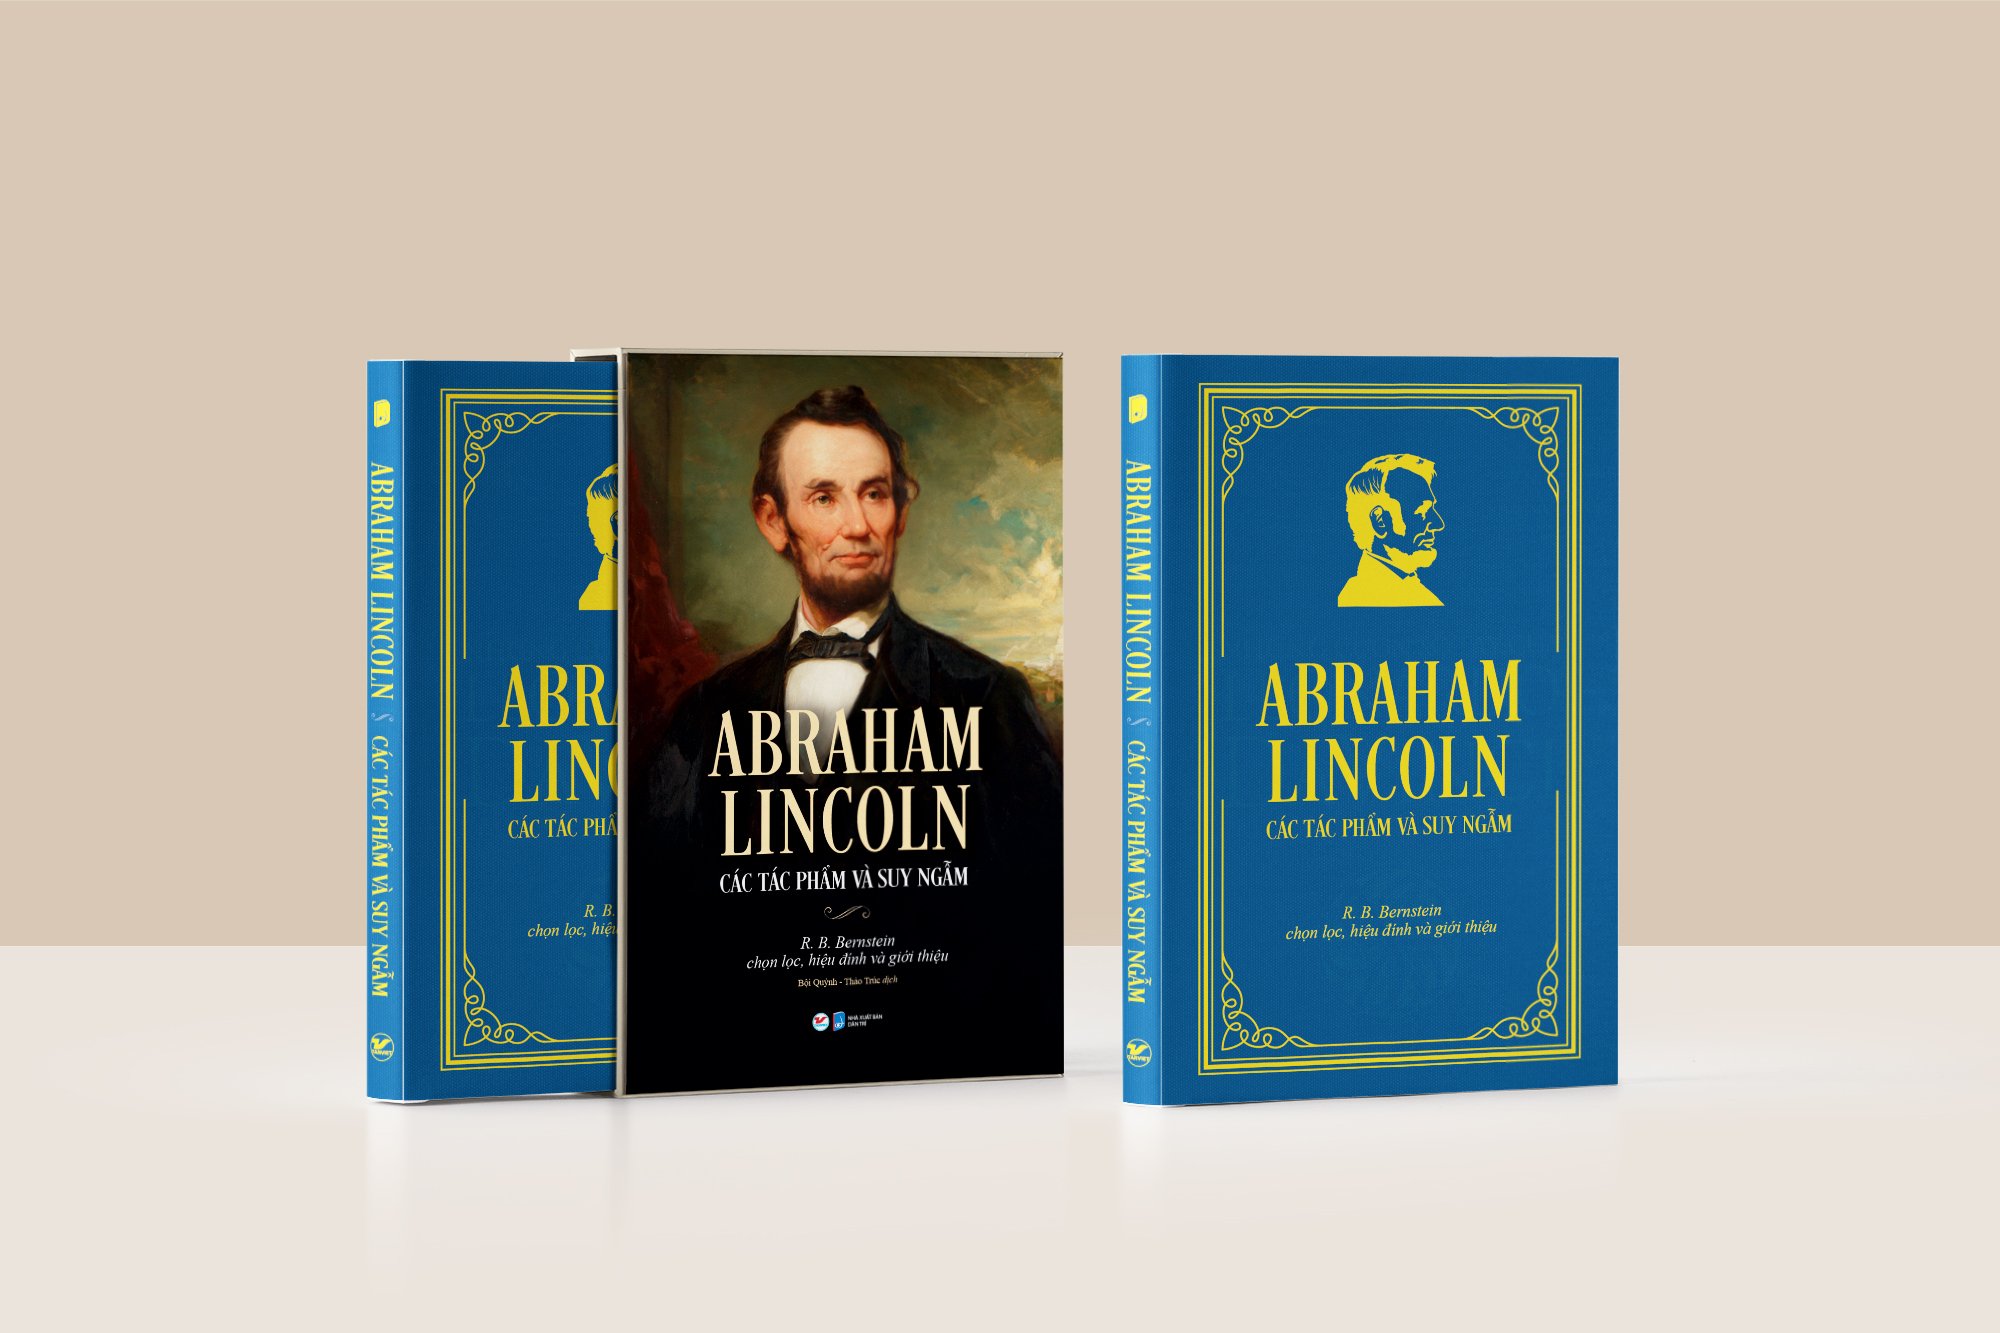 BỘ SÁCH DELUXE BOOKS (BỘ SÁCH SANG TRỌNG) – ABRAHAM LINCOLN - CÁC TÁC PHẨM VÀ SUY NGẪM